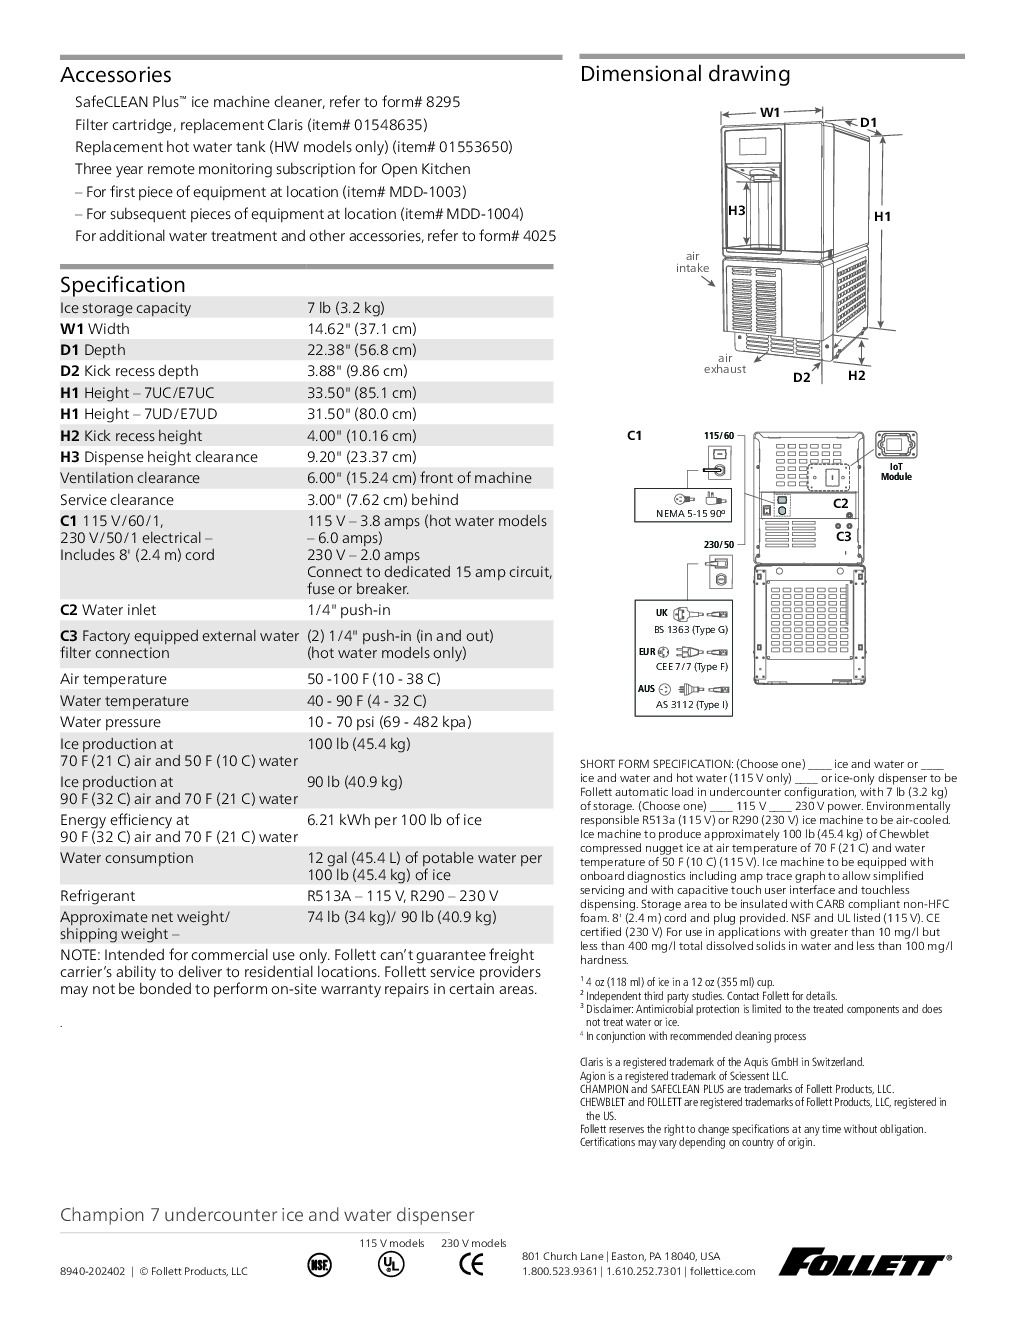 Follett 7UC112A-NW-NF-ST-00 Ice Dispenser